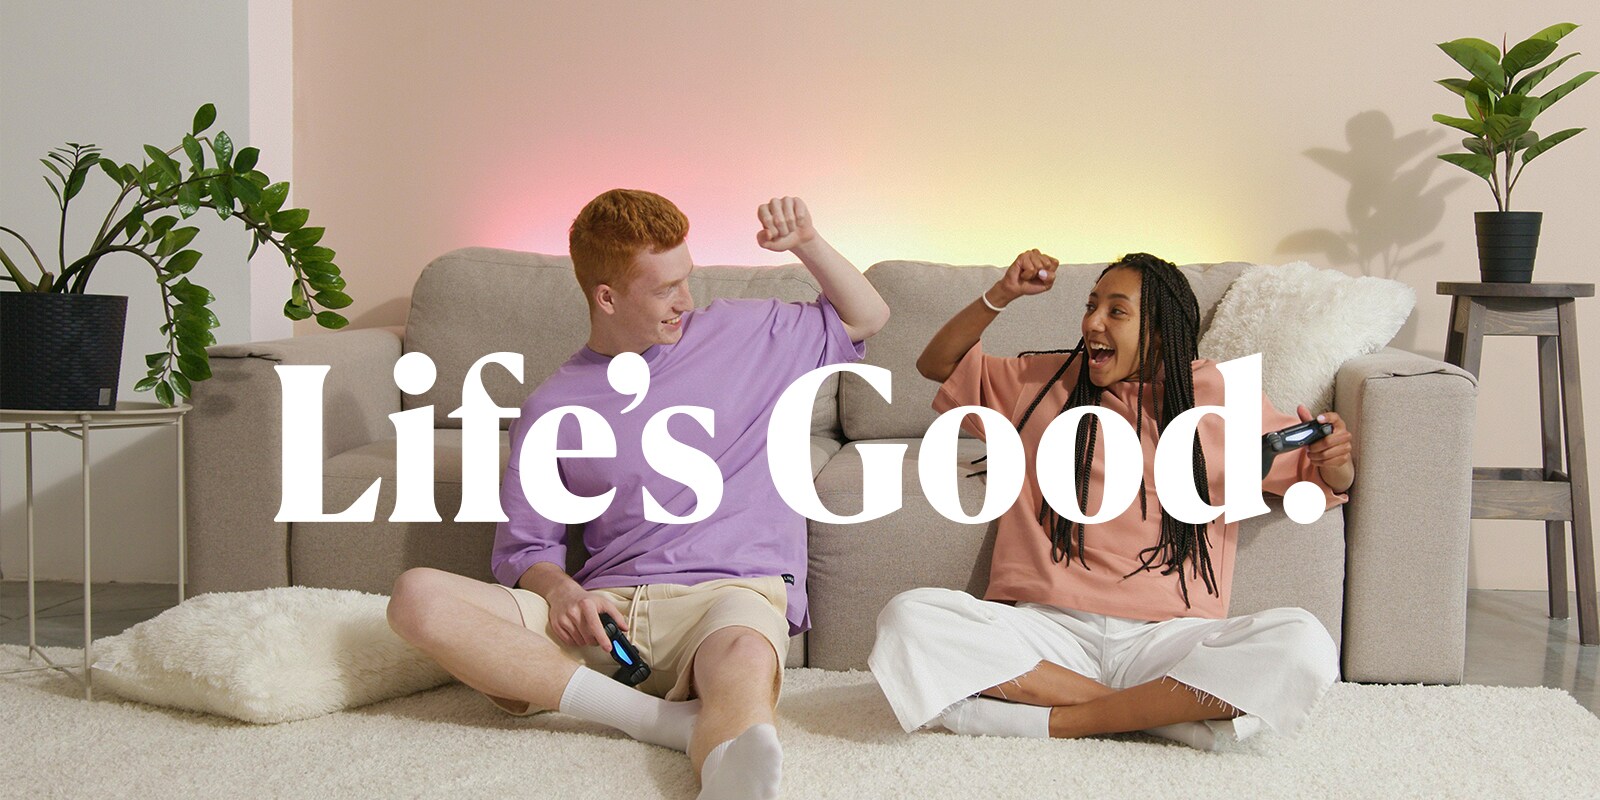 Lifes good promo